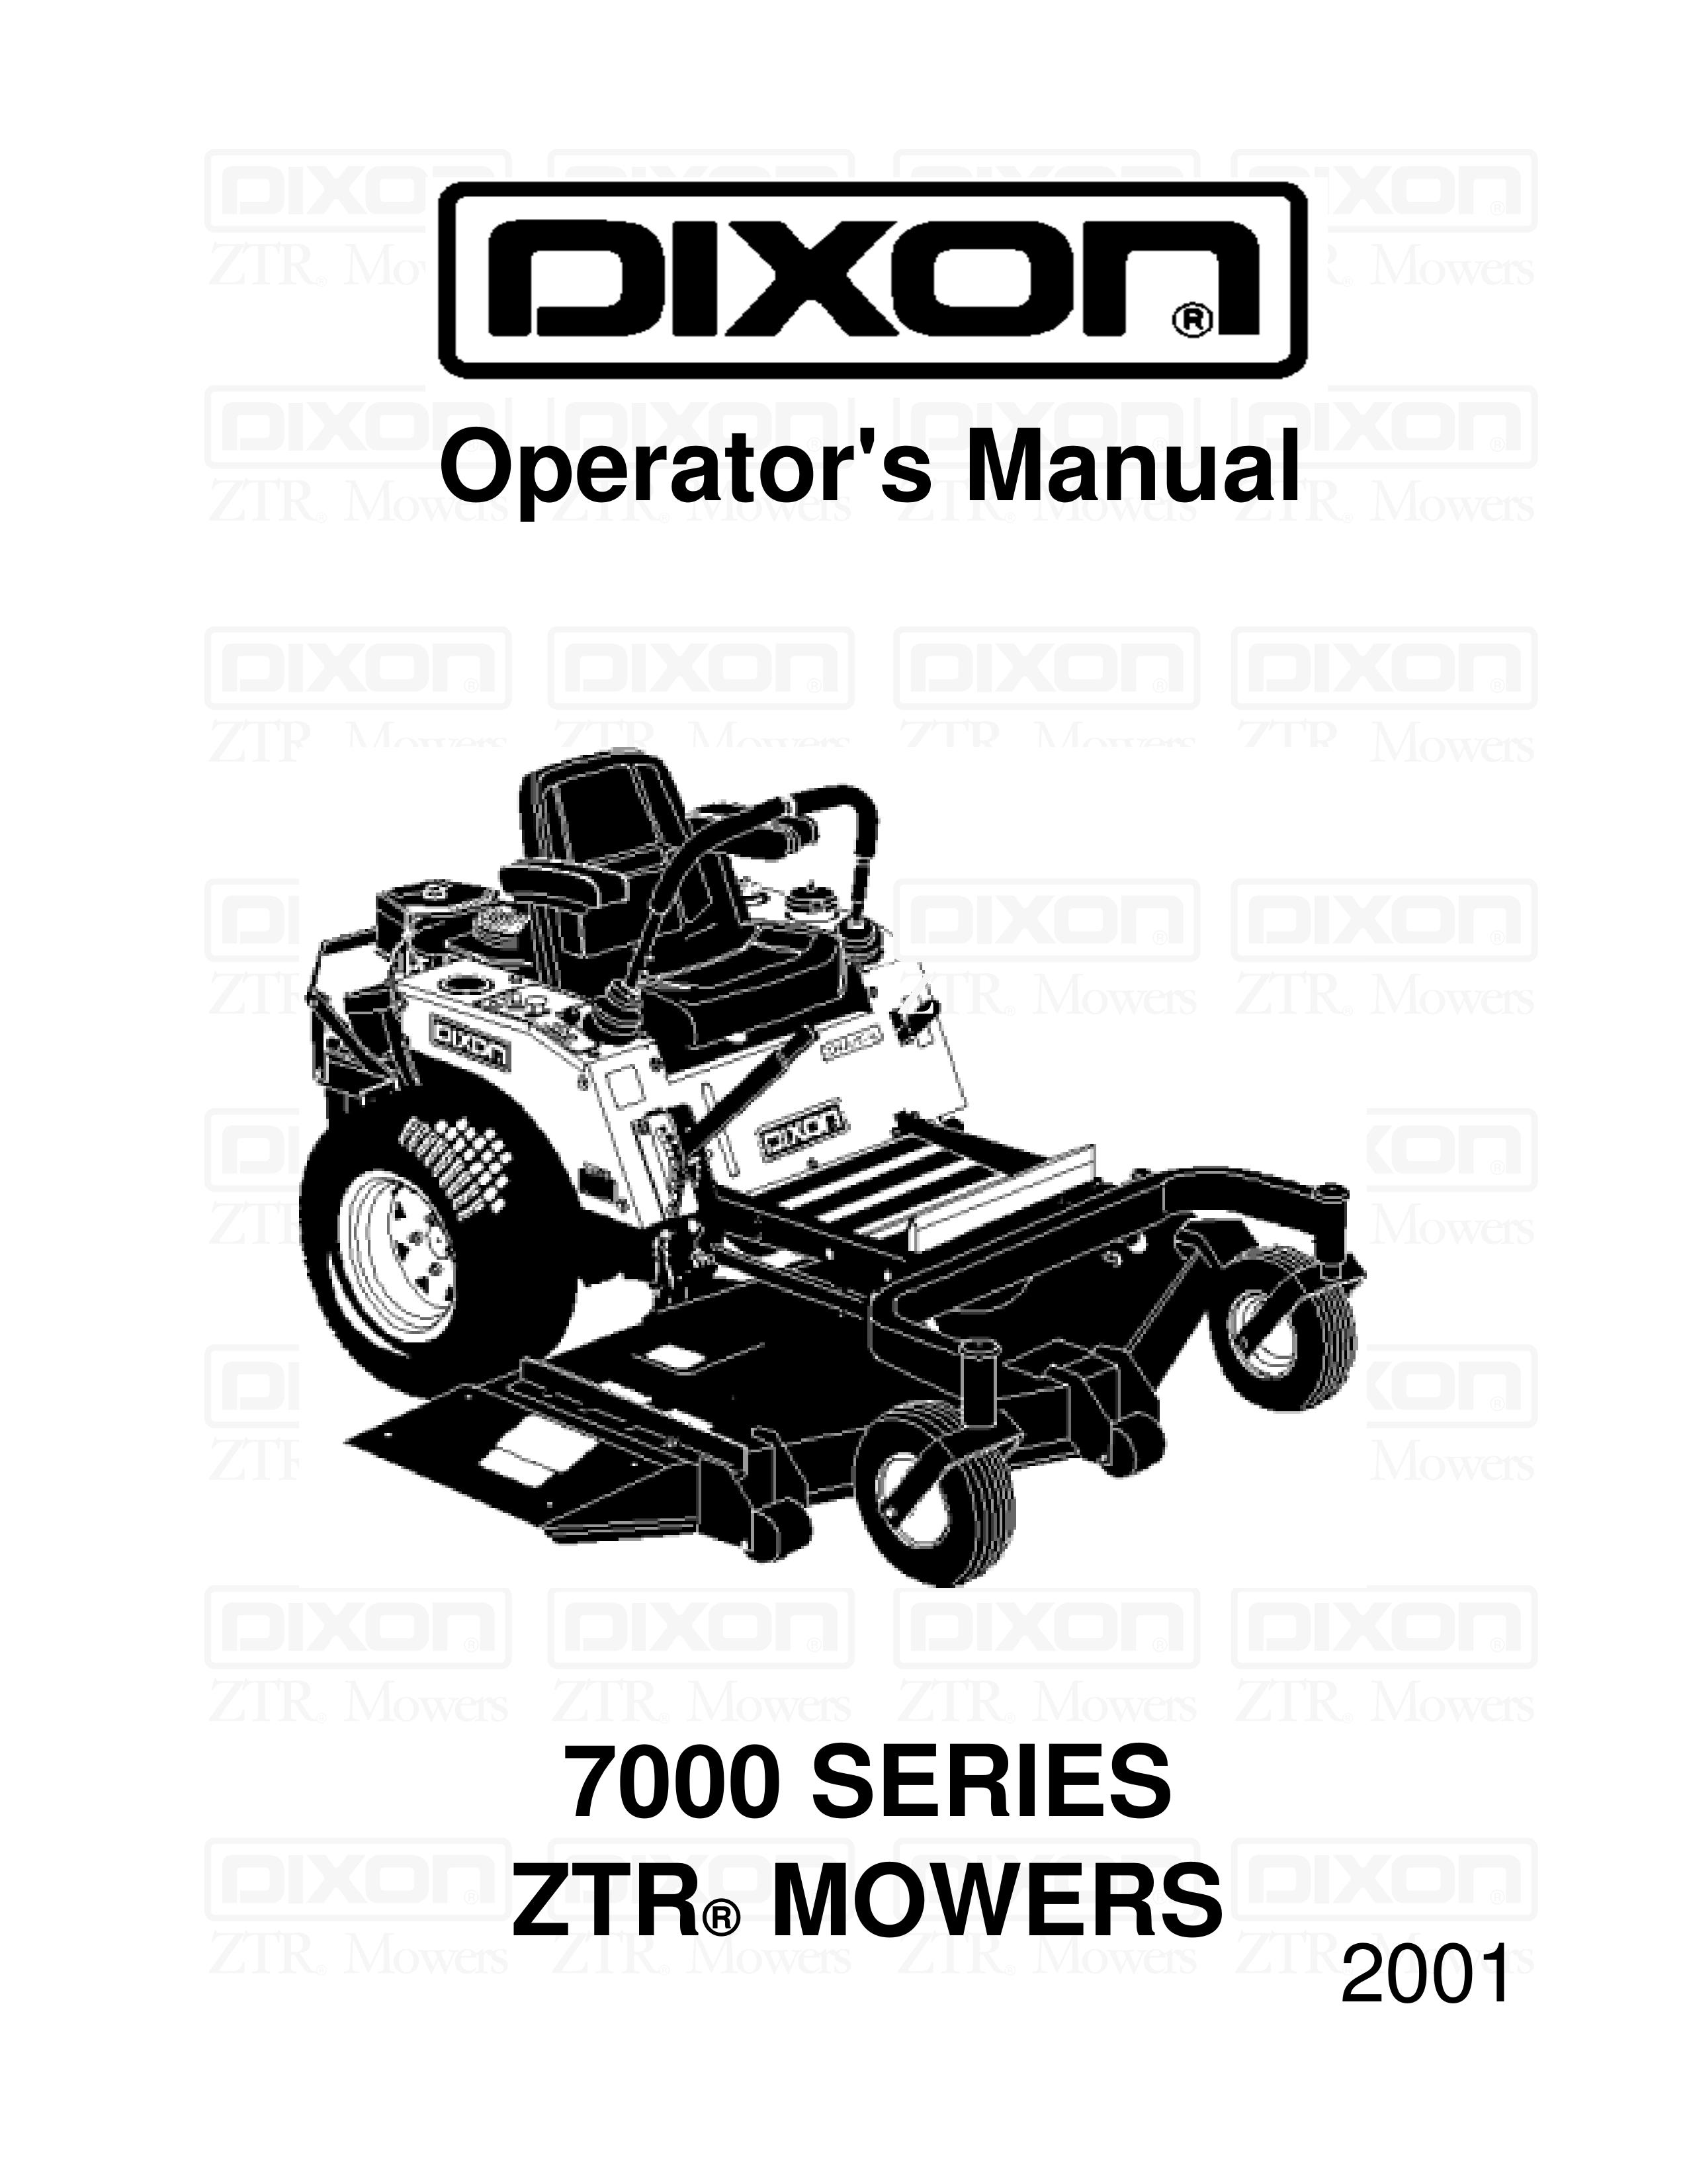 Dixon 13091-0500 Lawn Mower User Manual